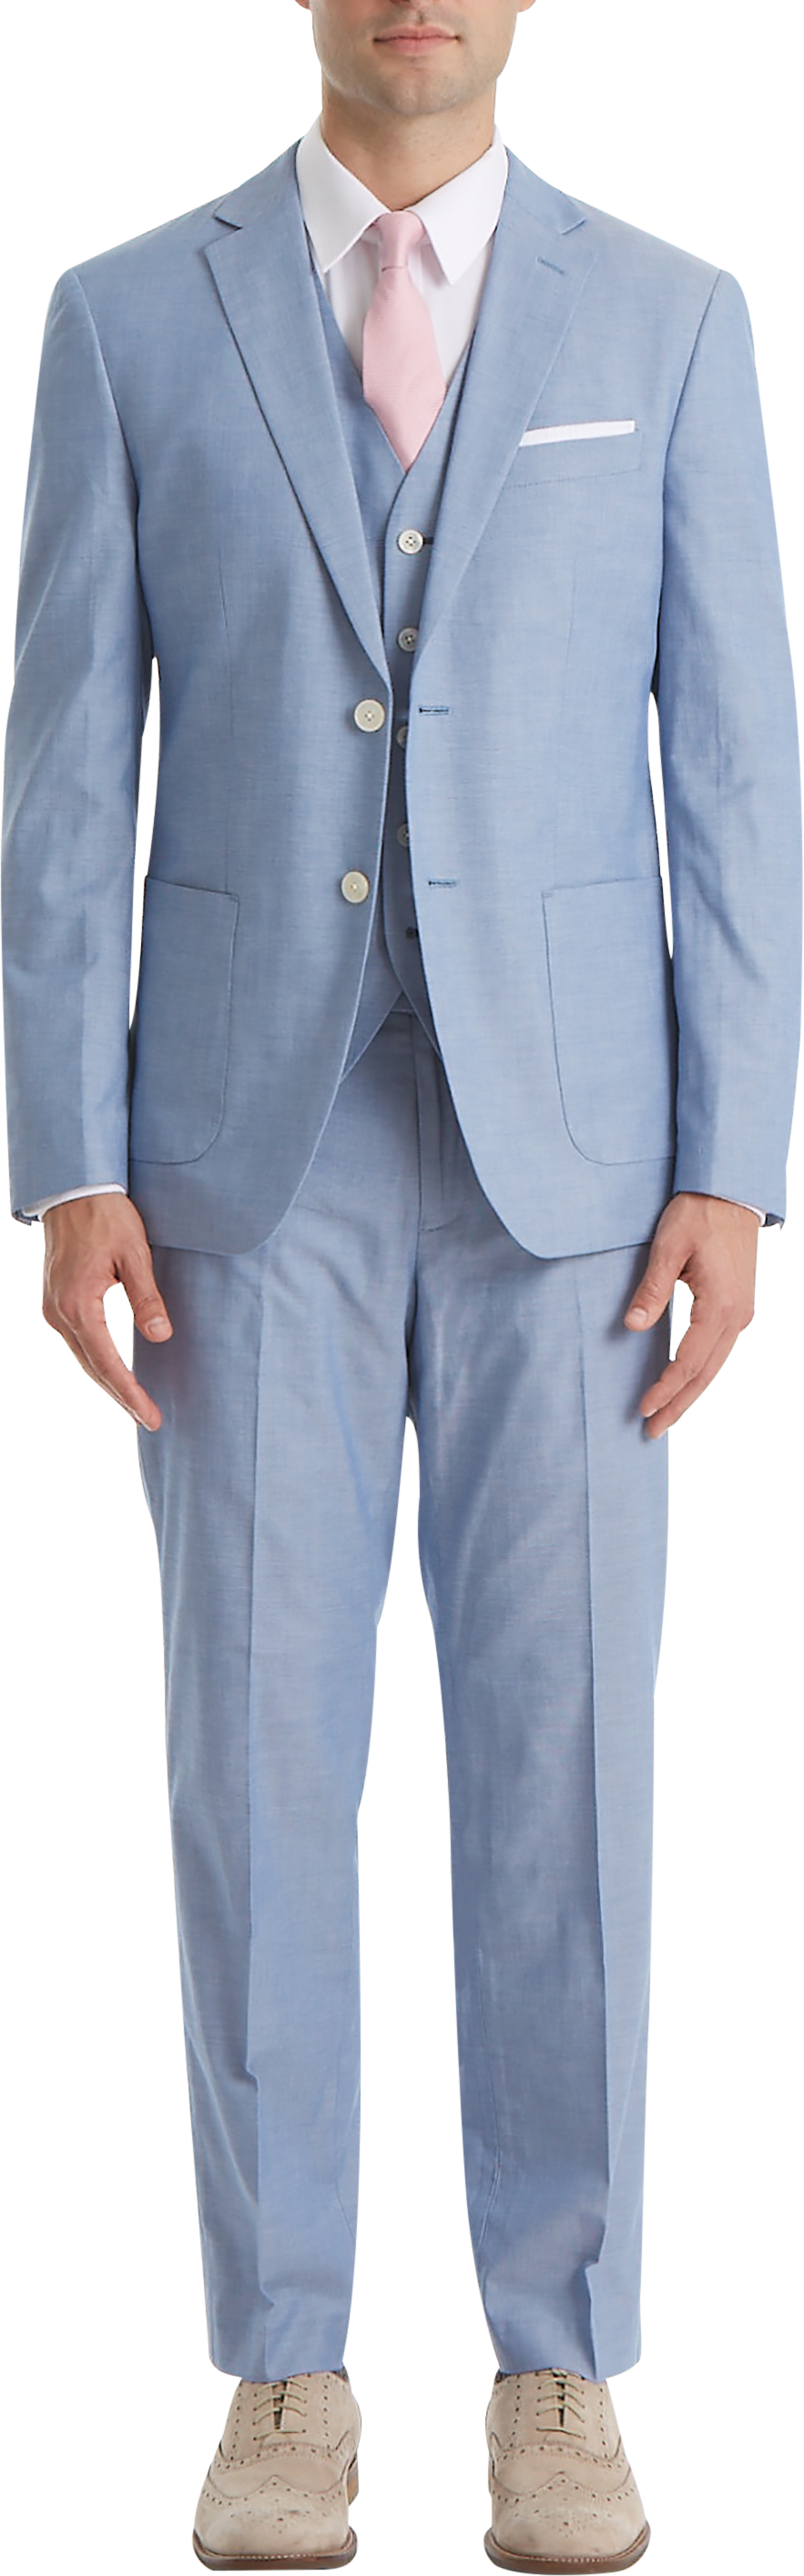 Lauren By Ralph Lauren Classic Fit Suit Separates Pants, Light Blue  Chambray - Men's Suits | Men's